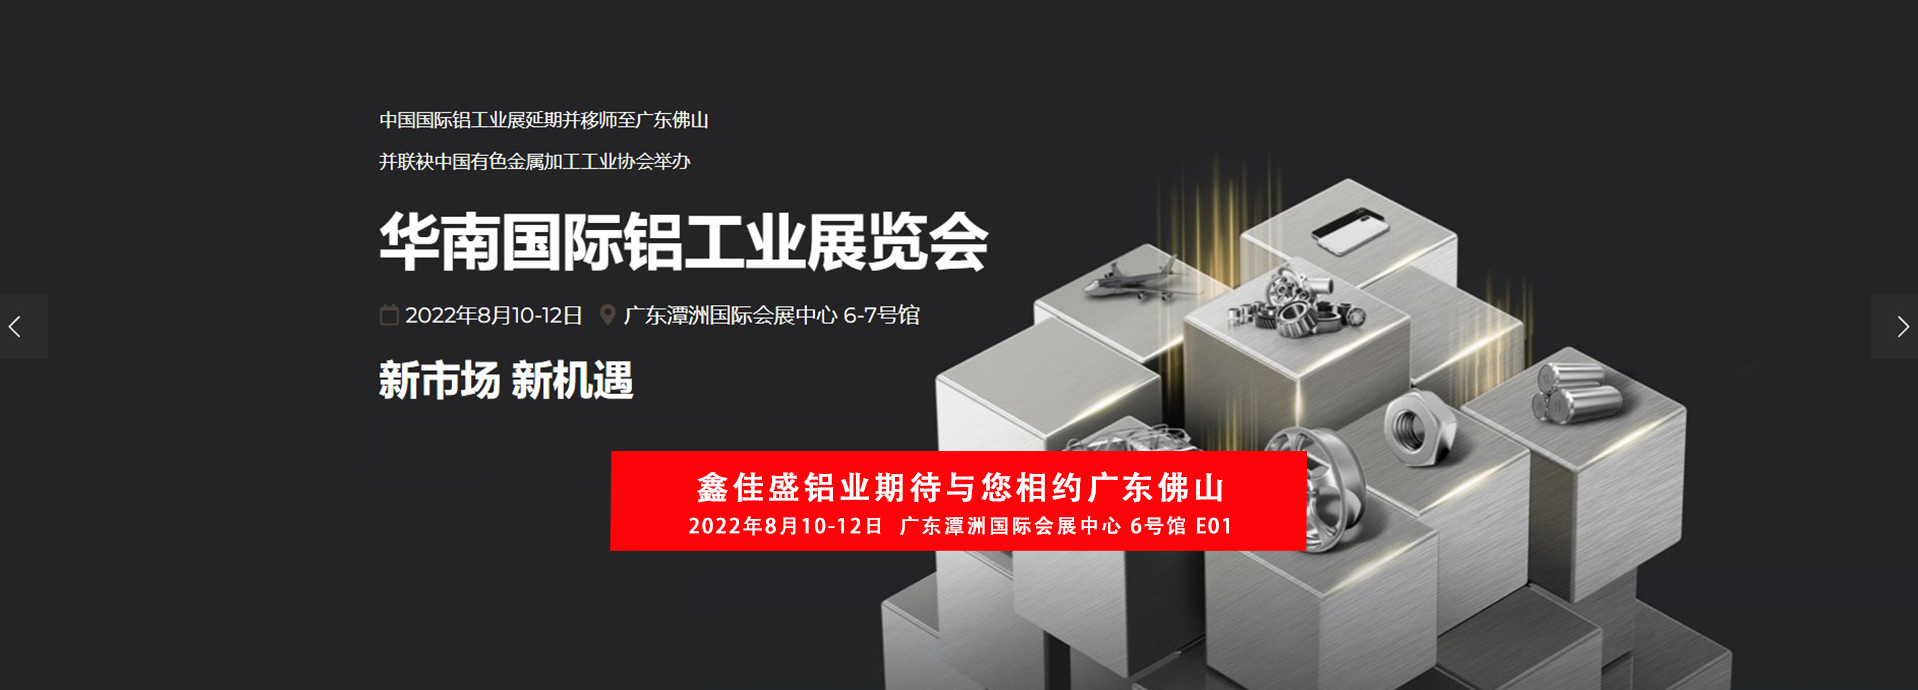 鑫佳盛与您相约2022年8月10-12华南国际铝工业展